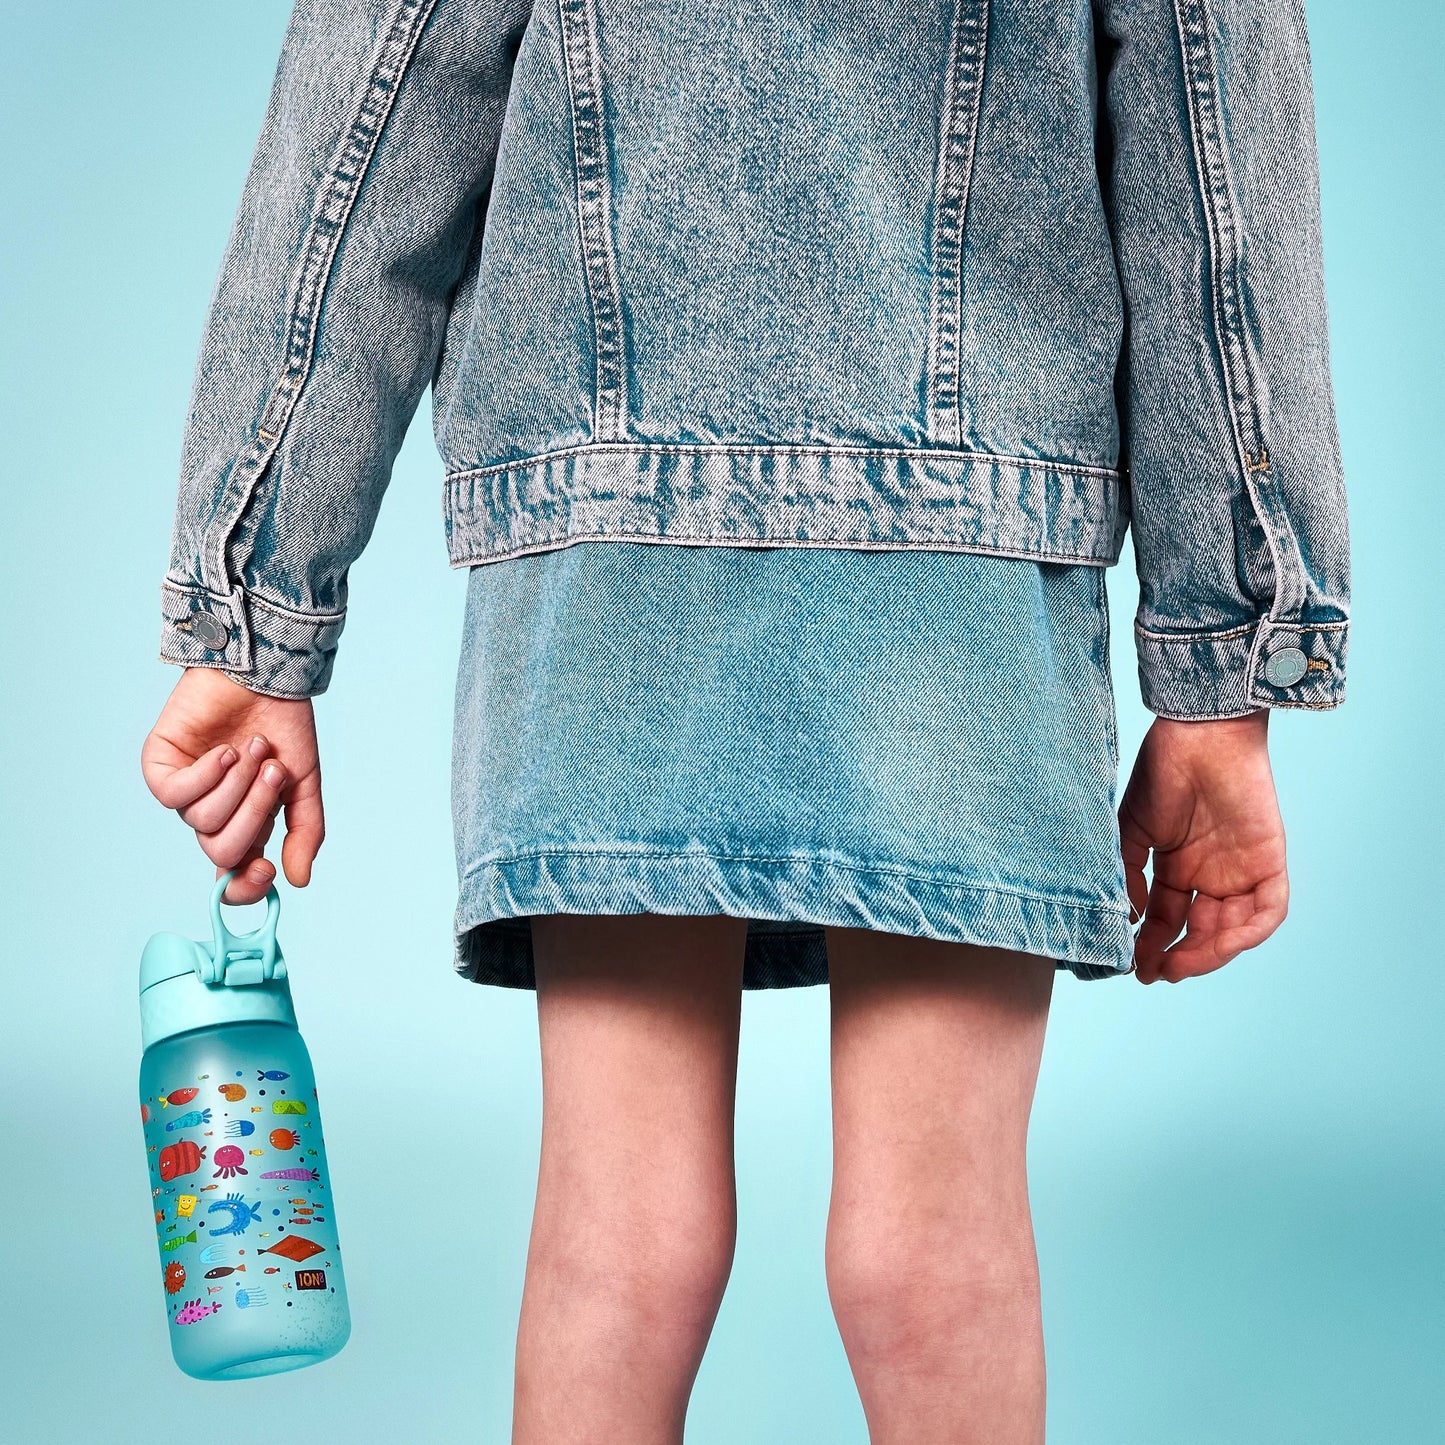 Leak Proof Kids Water Bottle, Recyclon™, Fish, 350ml (12oz)